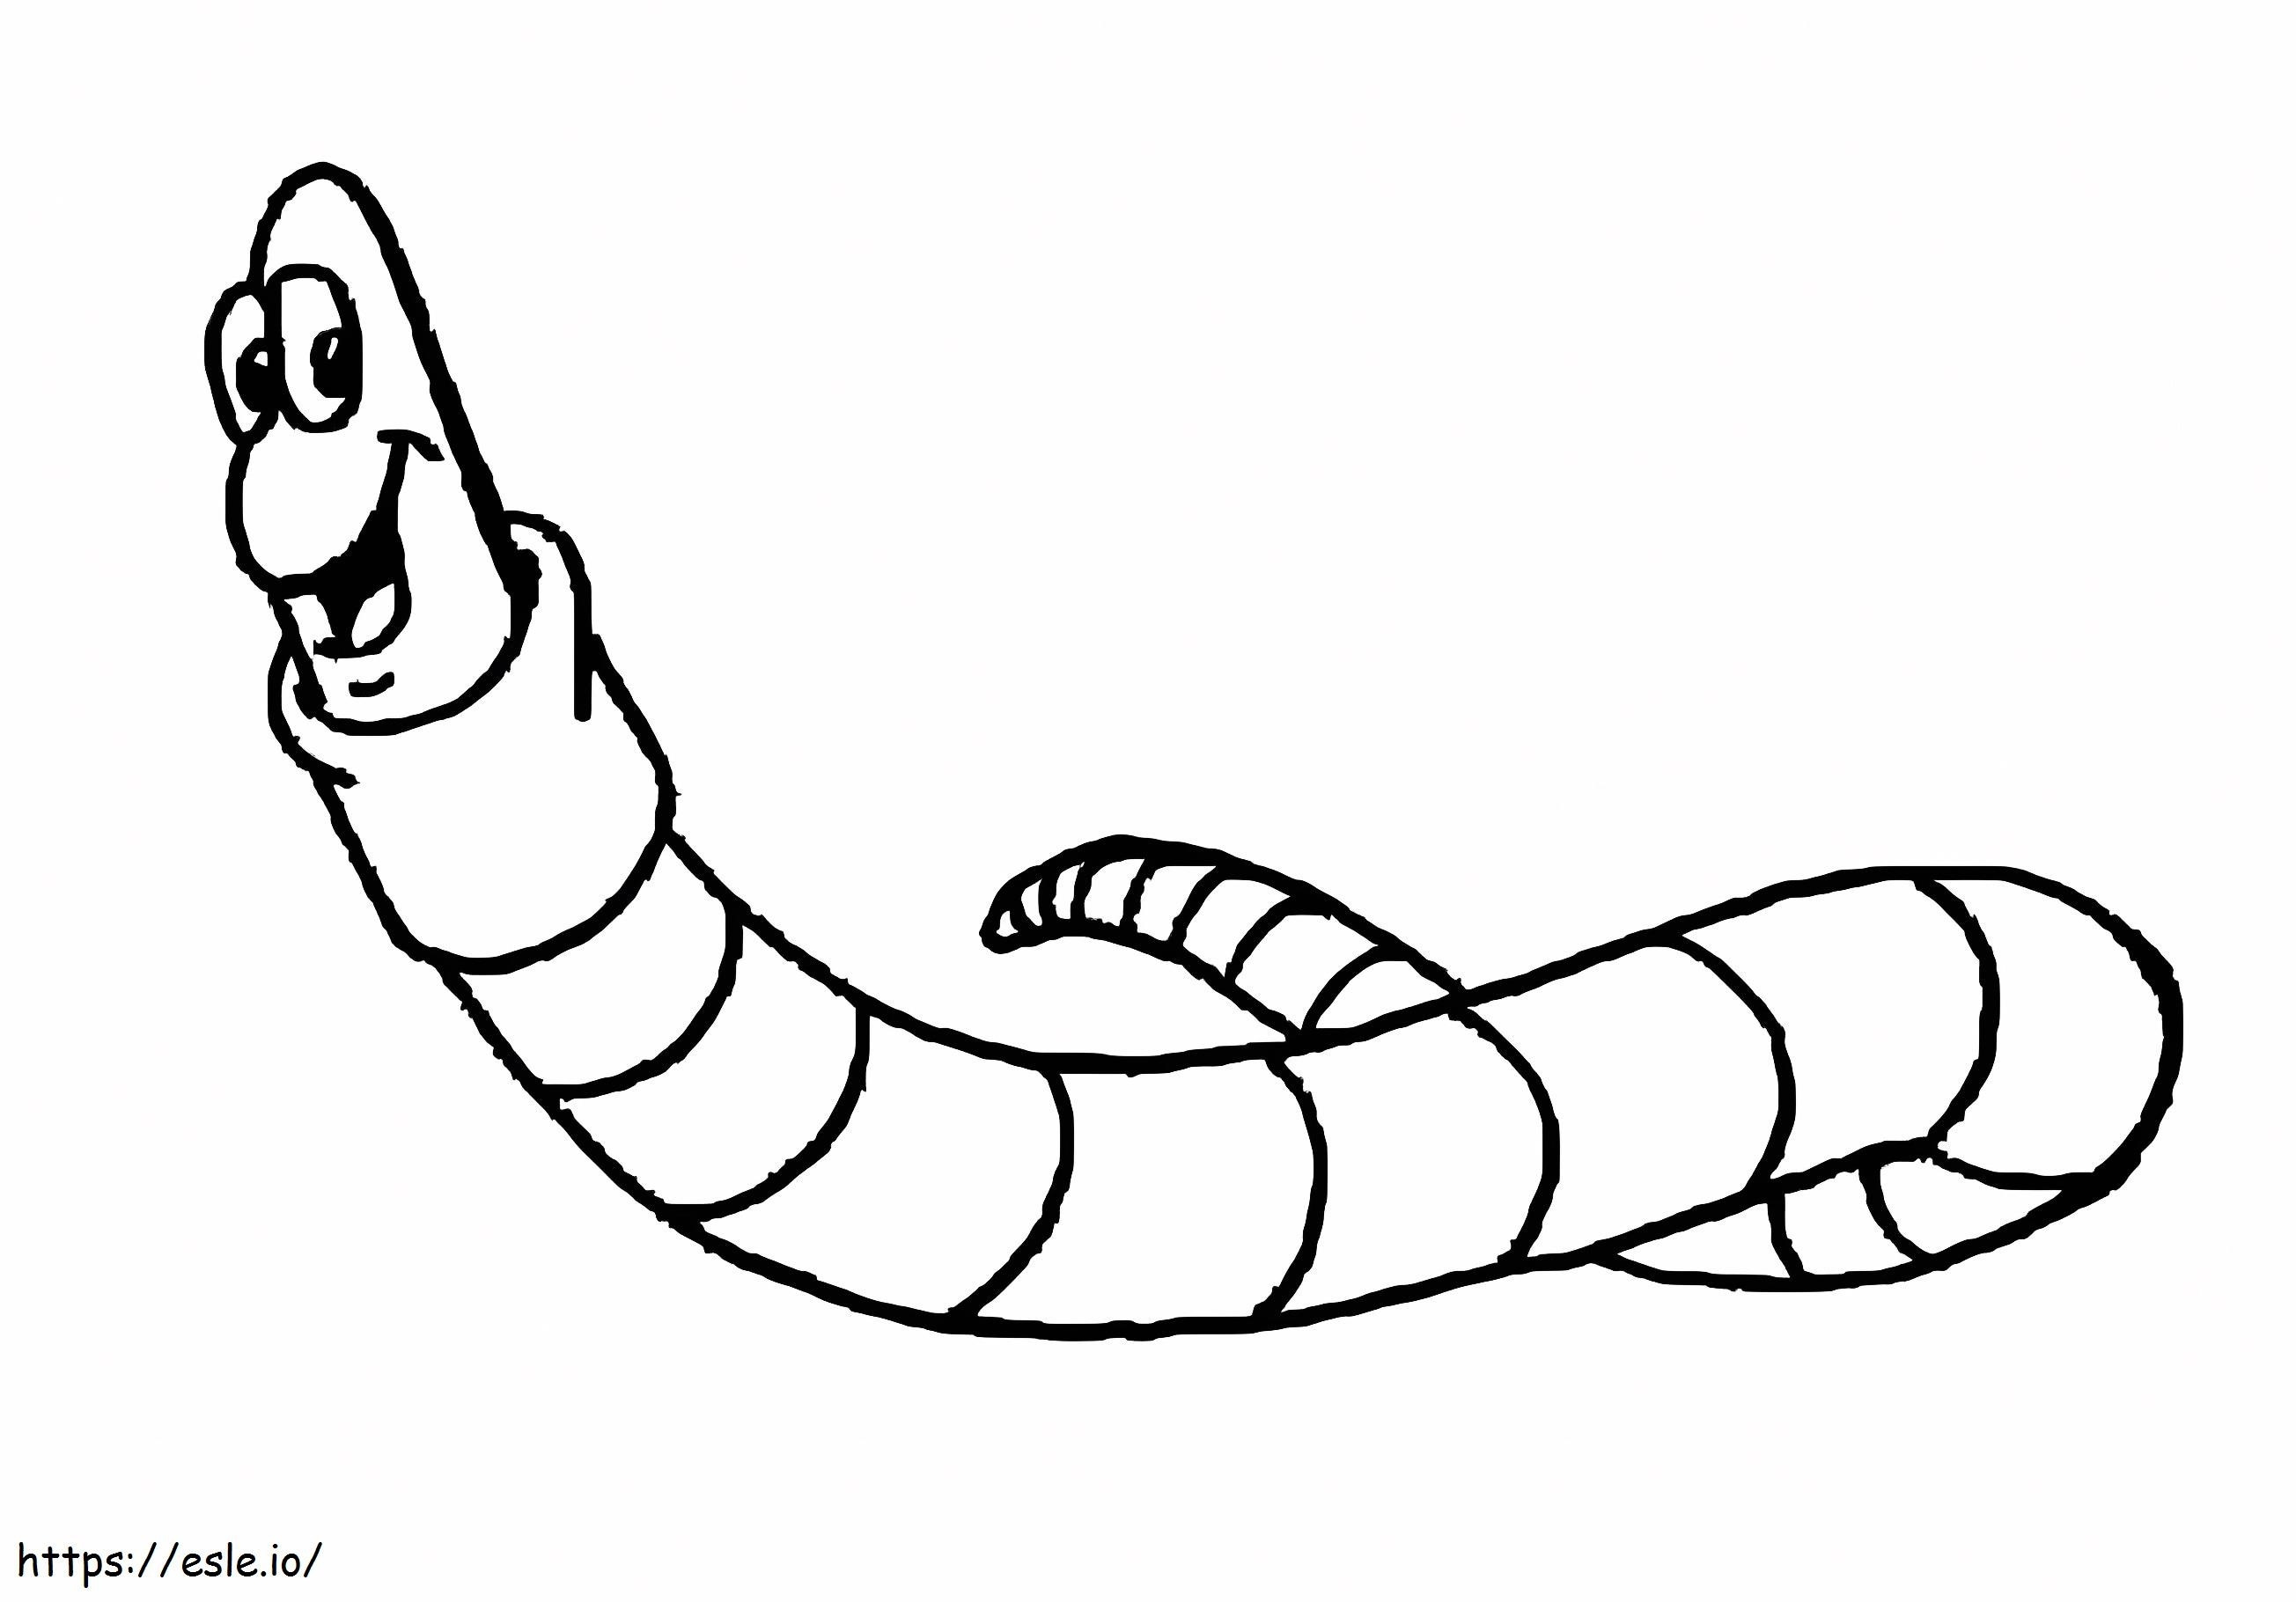 Regenworm lacht kleurplaat kleurplaat